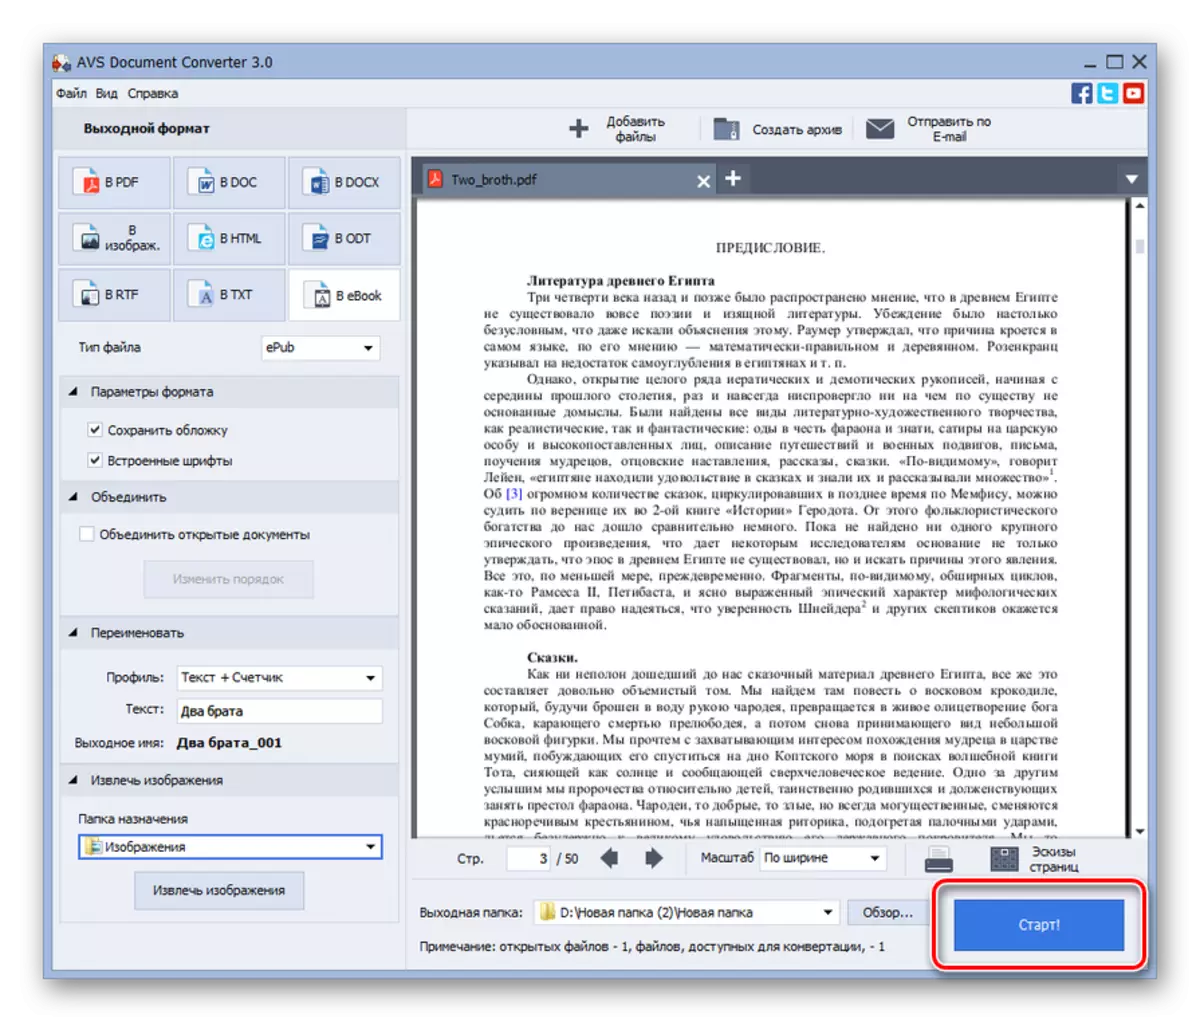 Запуск пераўтварэнні дакумента PDF ў фармат ePub у праграме AVS Document Converter